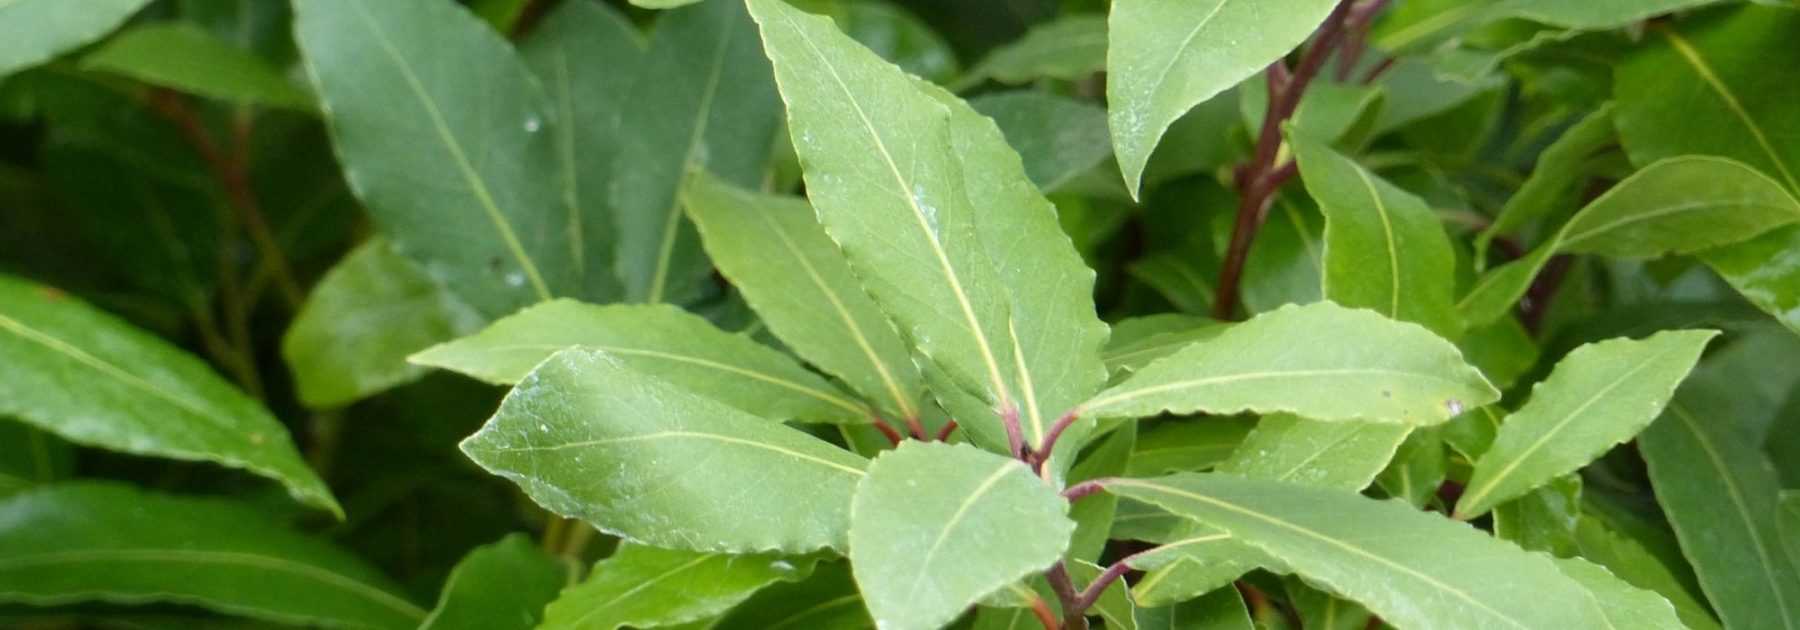 Quelle est la durée de conservation des feuilles de laurier ? 